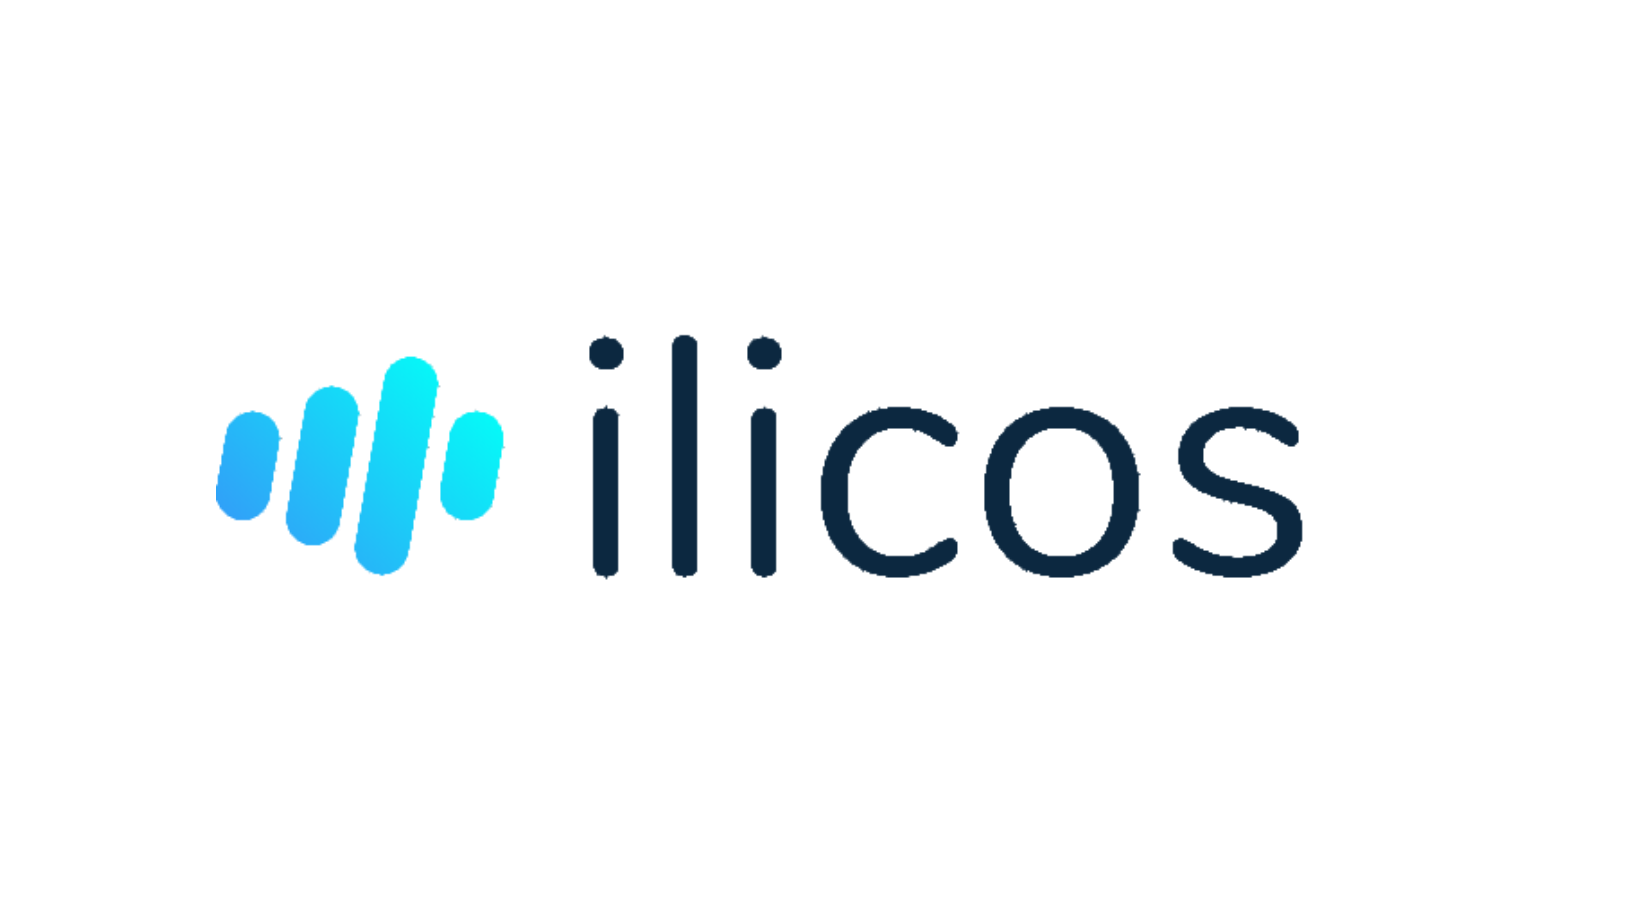 ilicos GmbH